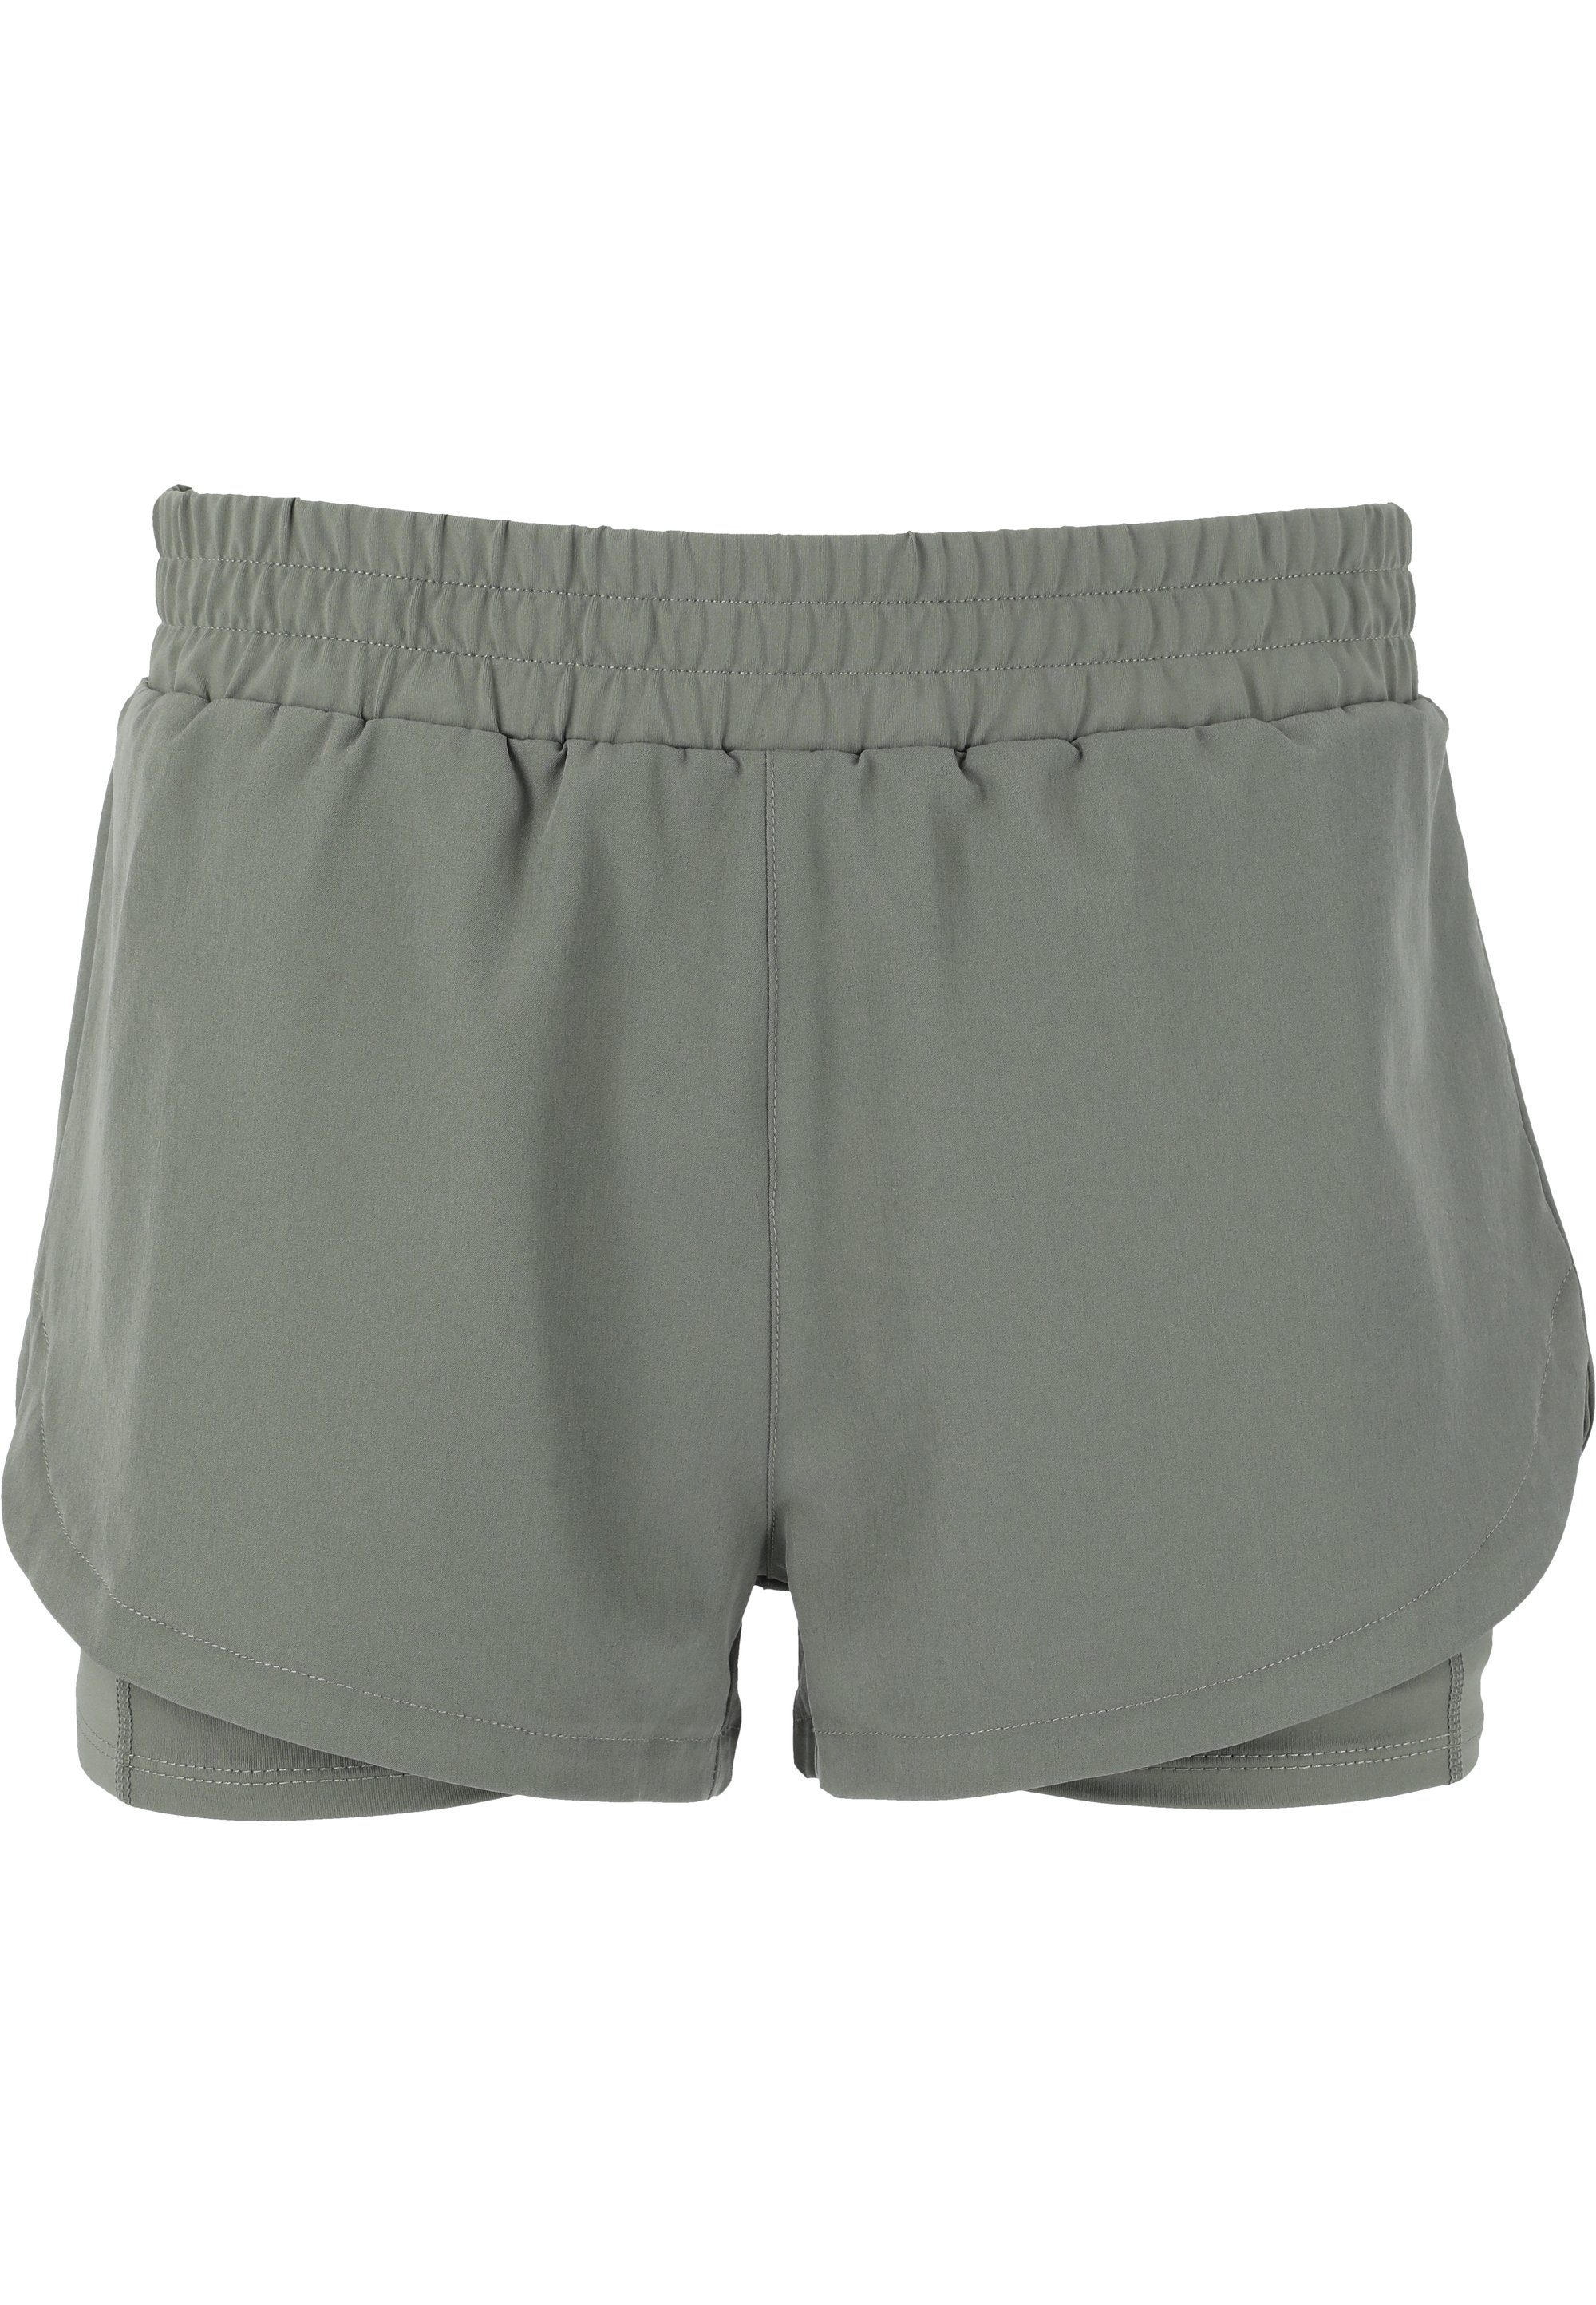 ENDURANCE mit praktischer grün Yarol Shorts 2-in-1-Funktion